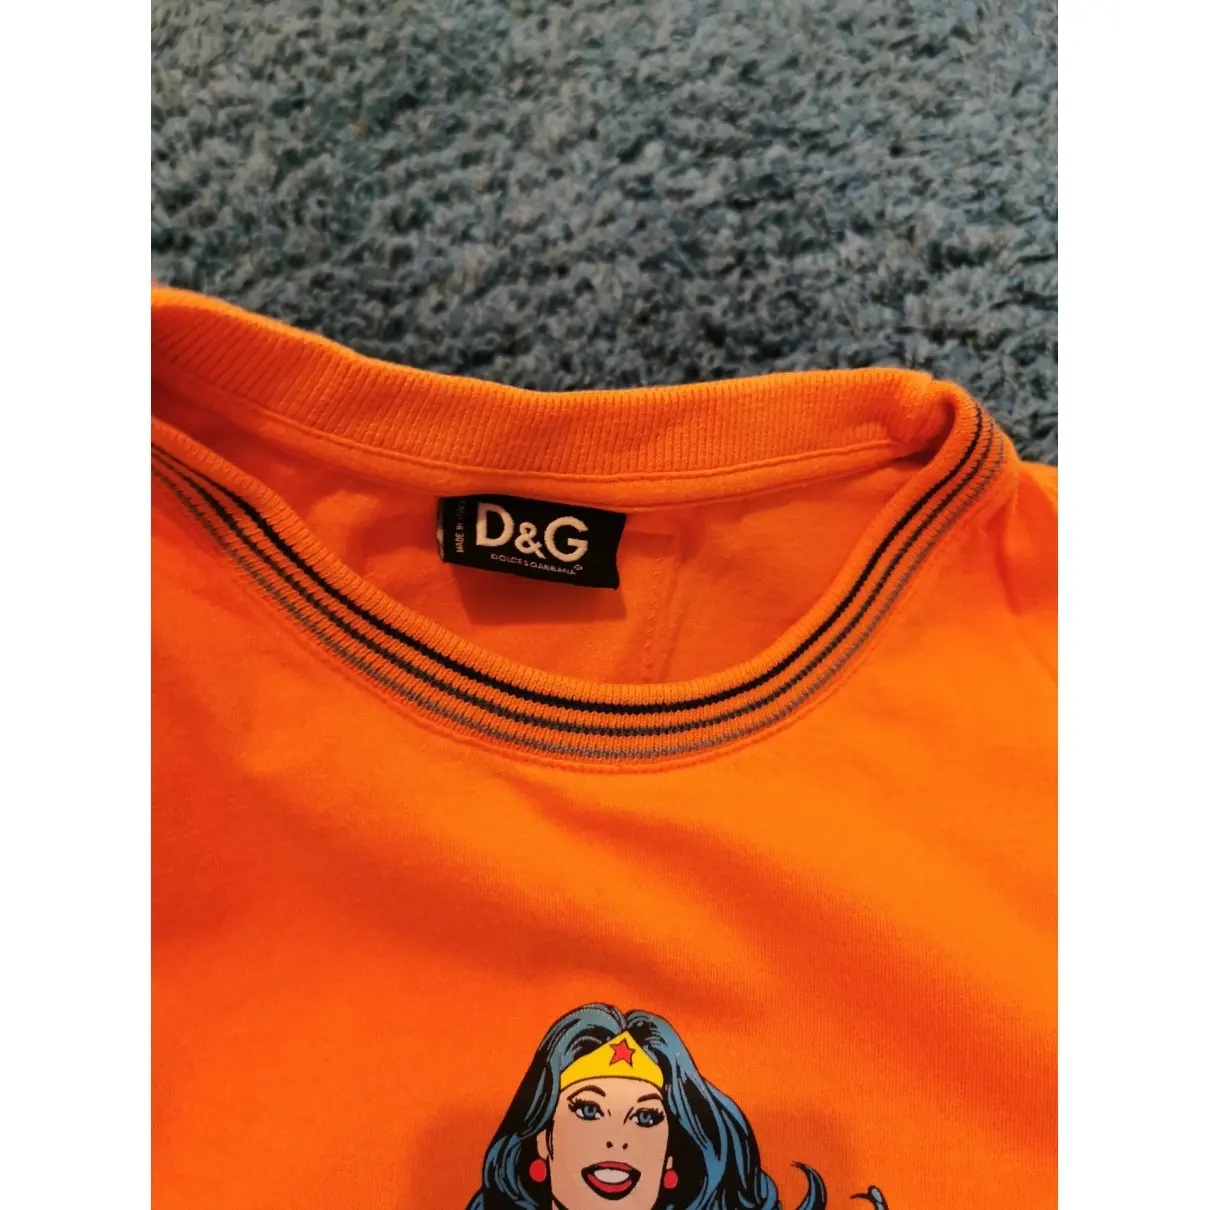 D&G Orange Cotton Top for sale